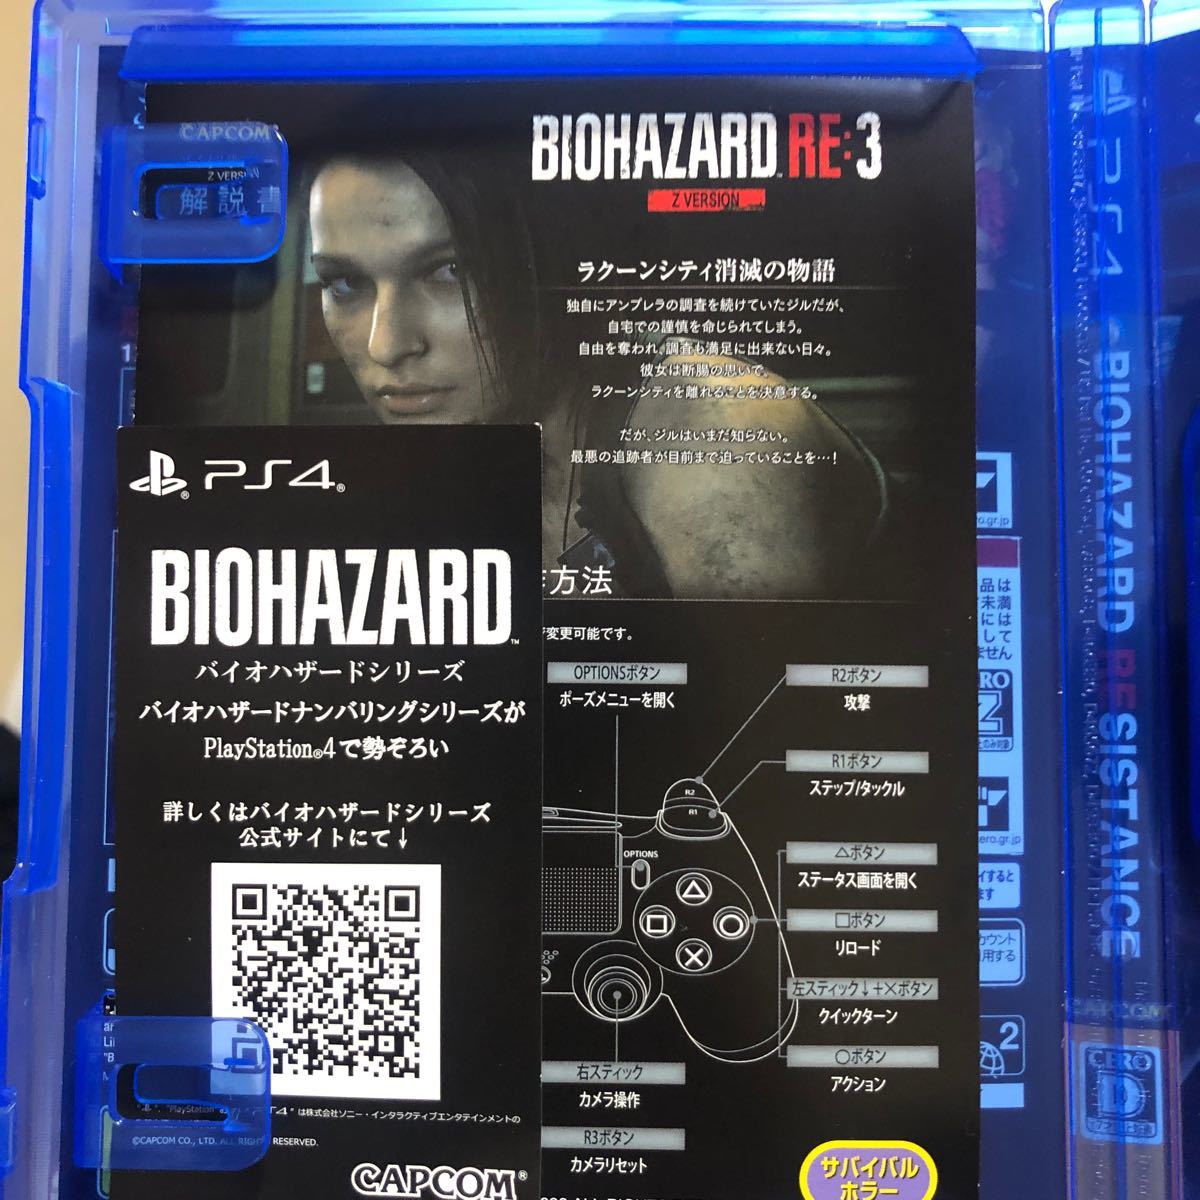 【PS4】 BIOHAZARD RE:2 Z Version [通常版]  RE3 ビレッジの3セットです。